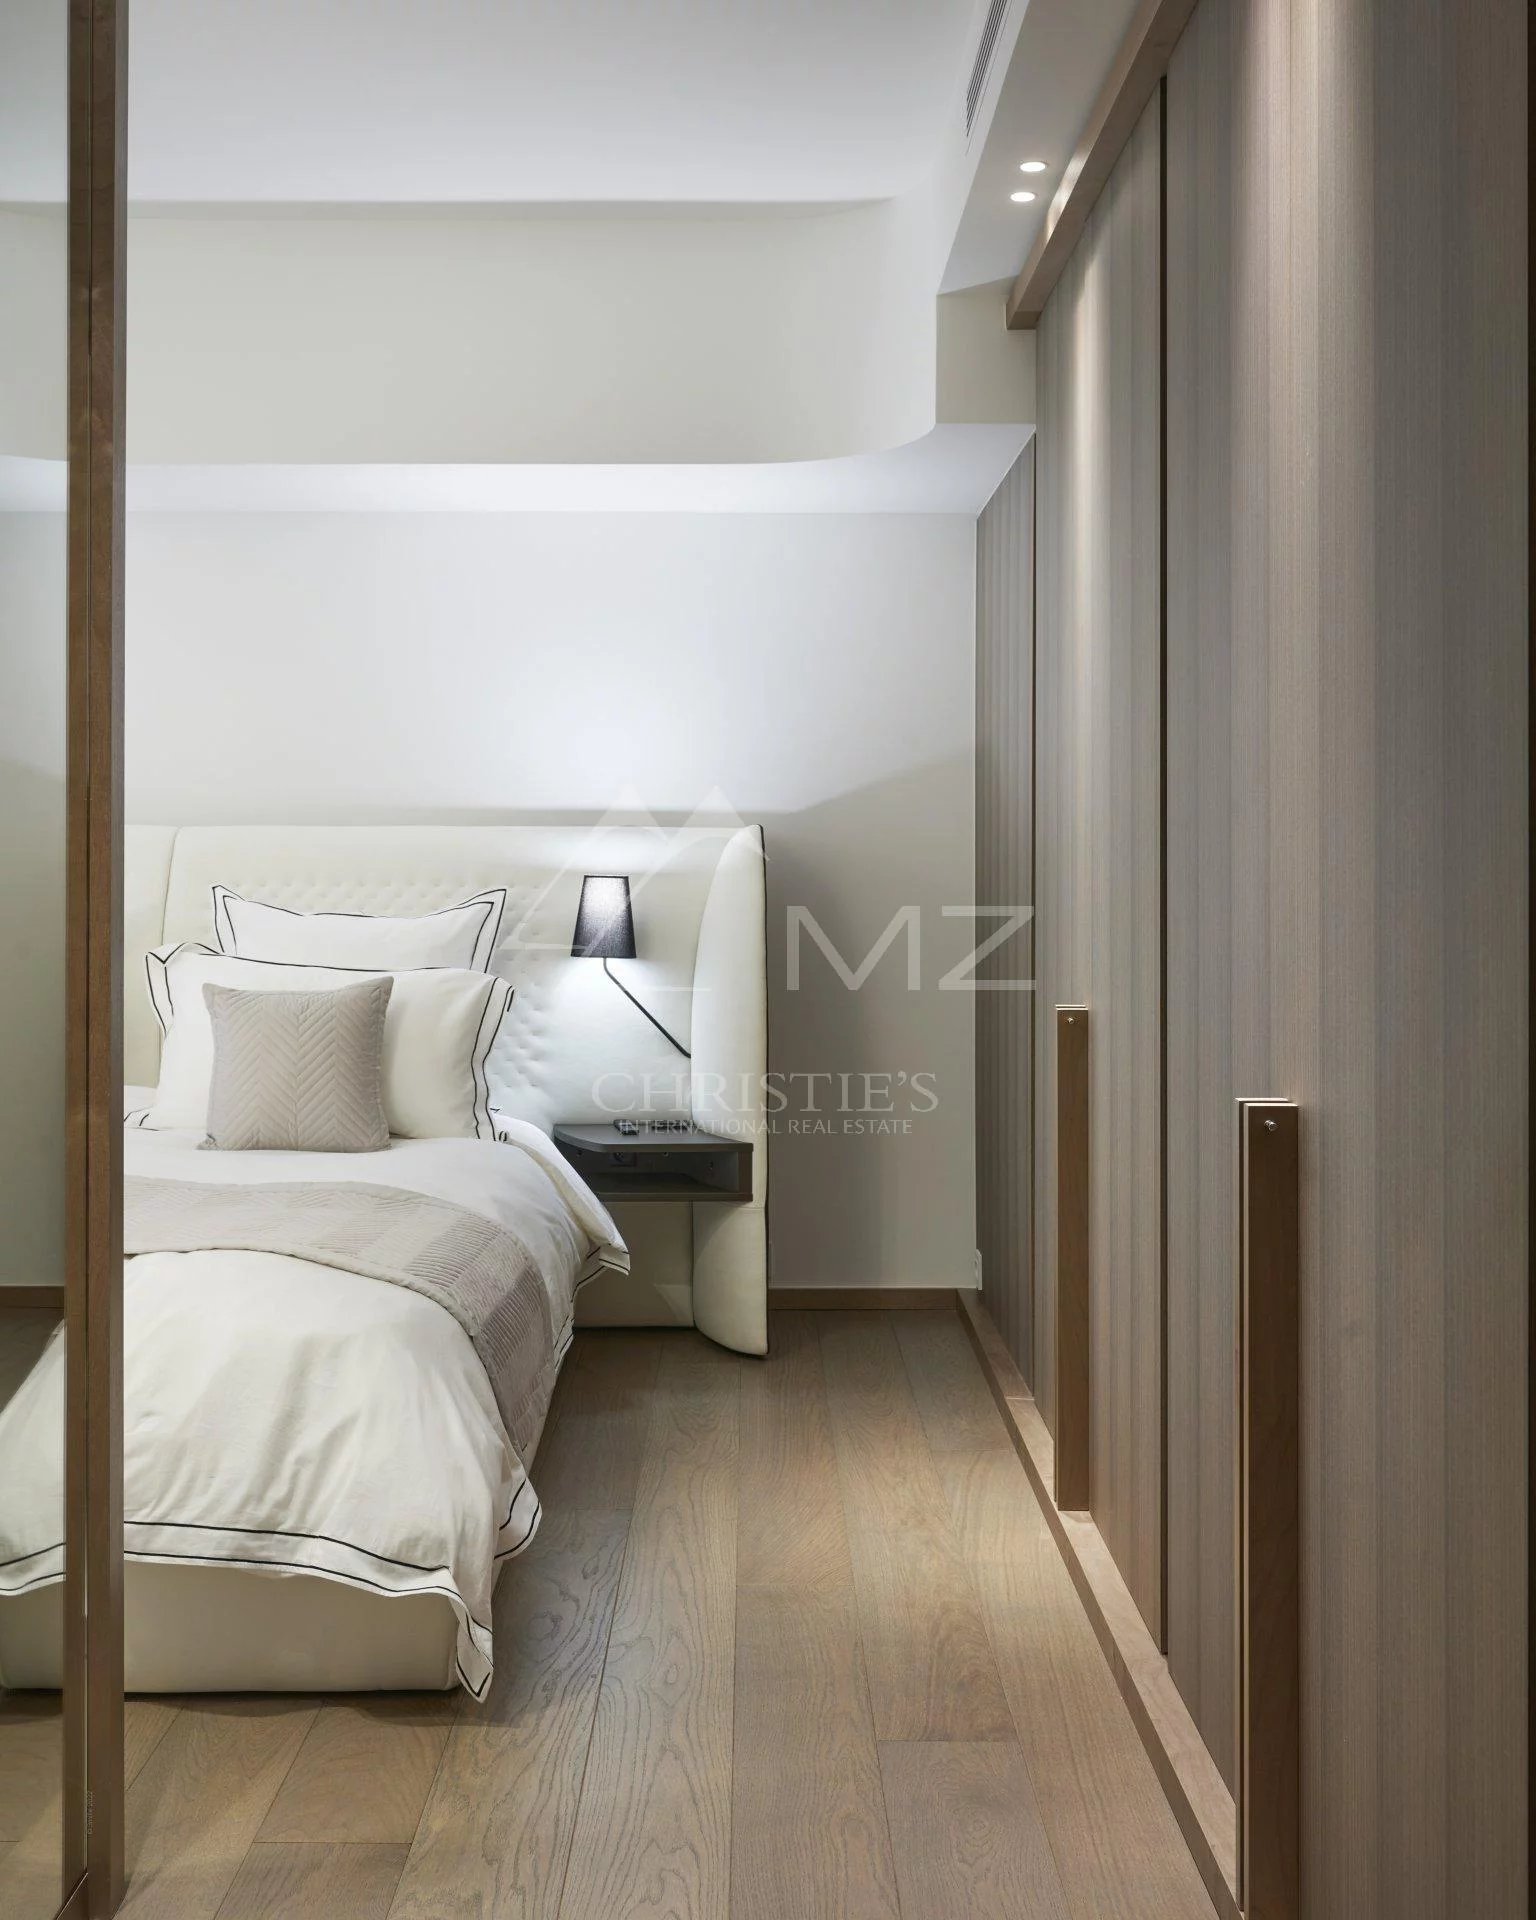 Cannes Croisette - 2  bedrooms apartment